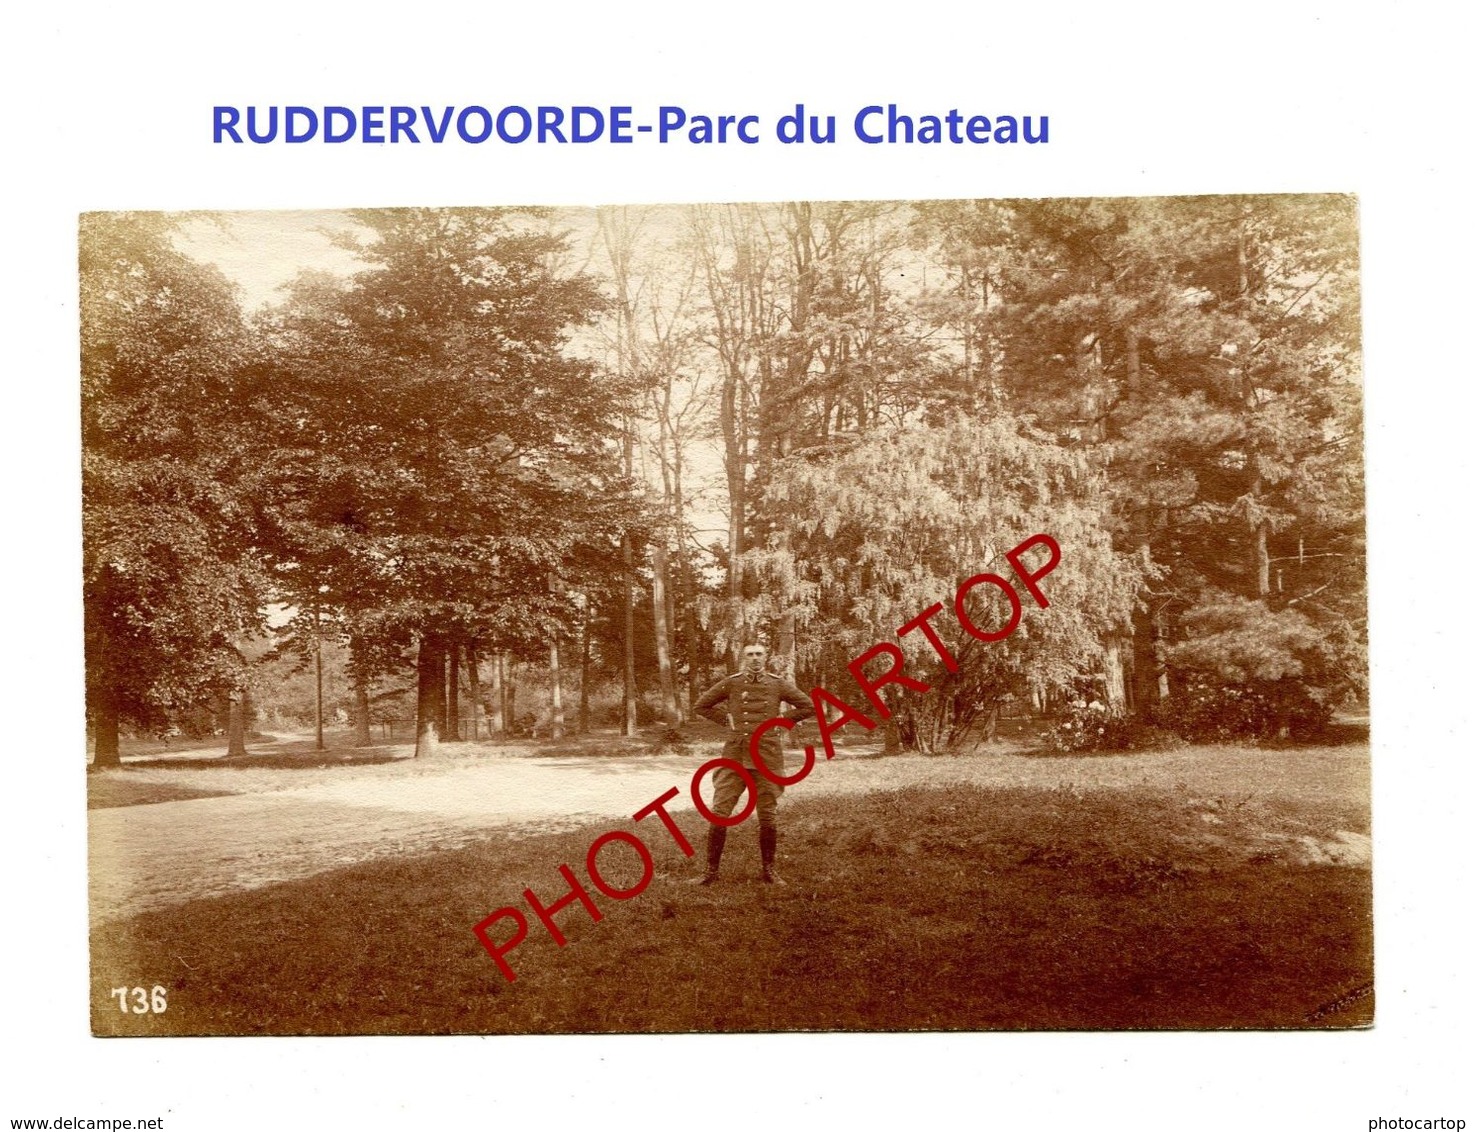 RUDDERVOORDE-Parc Du Chateau-Cliche 736-Inf. Regt.182-GUERRE 14-18-1 WK-Militaria-Belgien- - Oostkamp